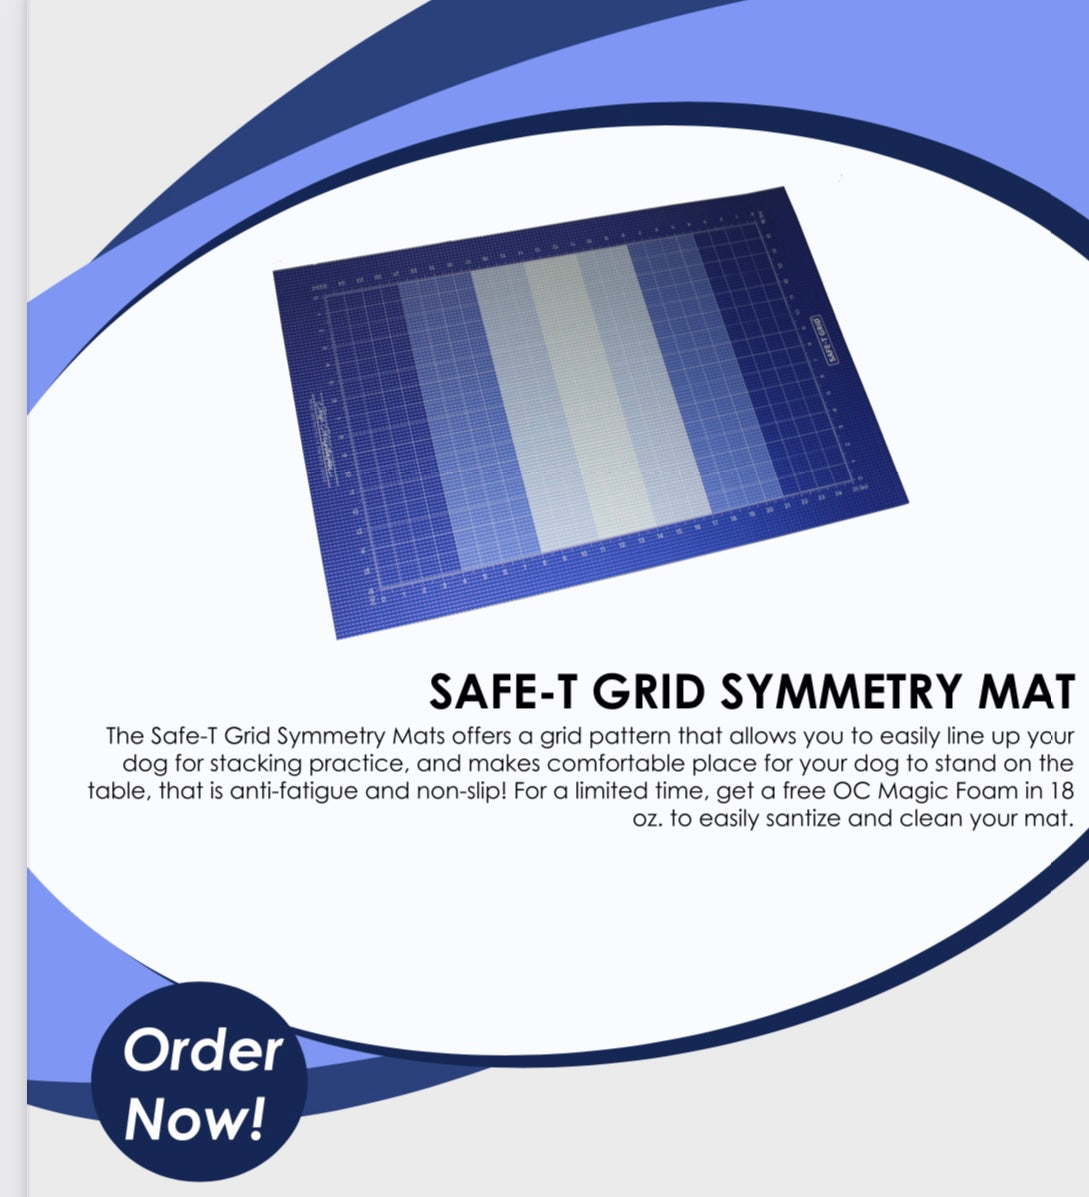 SAFE-T GRID SYMMETRY MAT